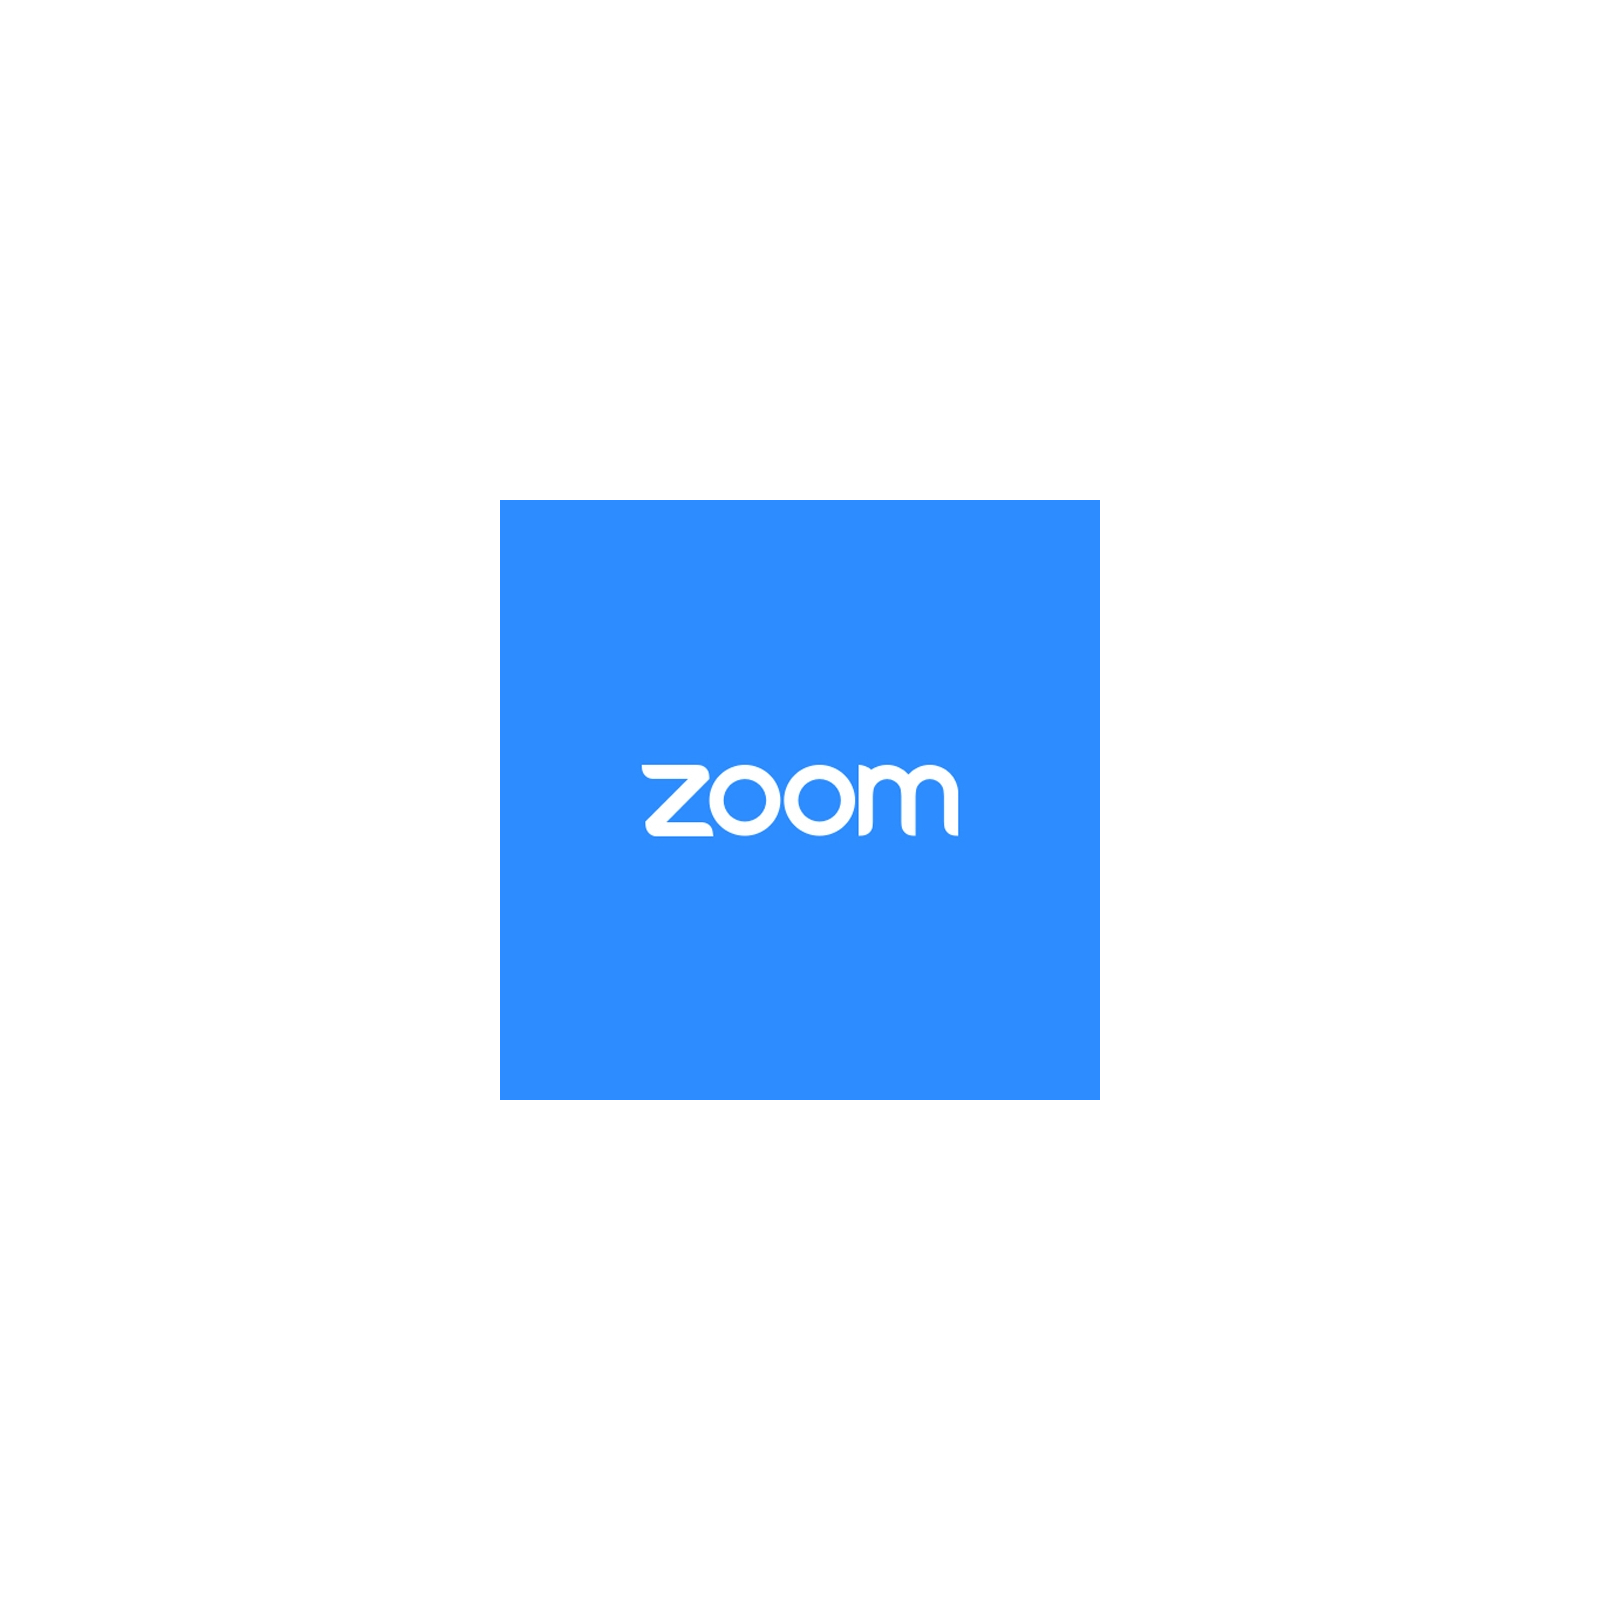 Системная утилита ZOOM Zoom Pro 1 month